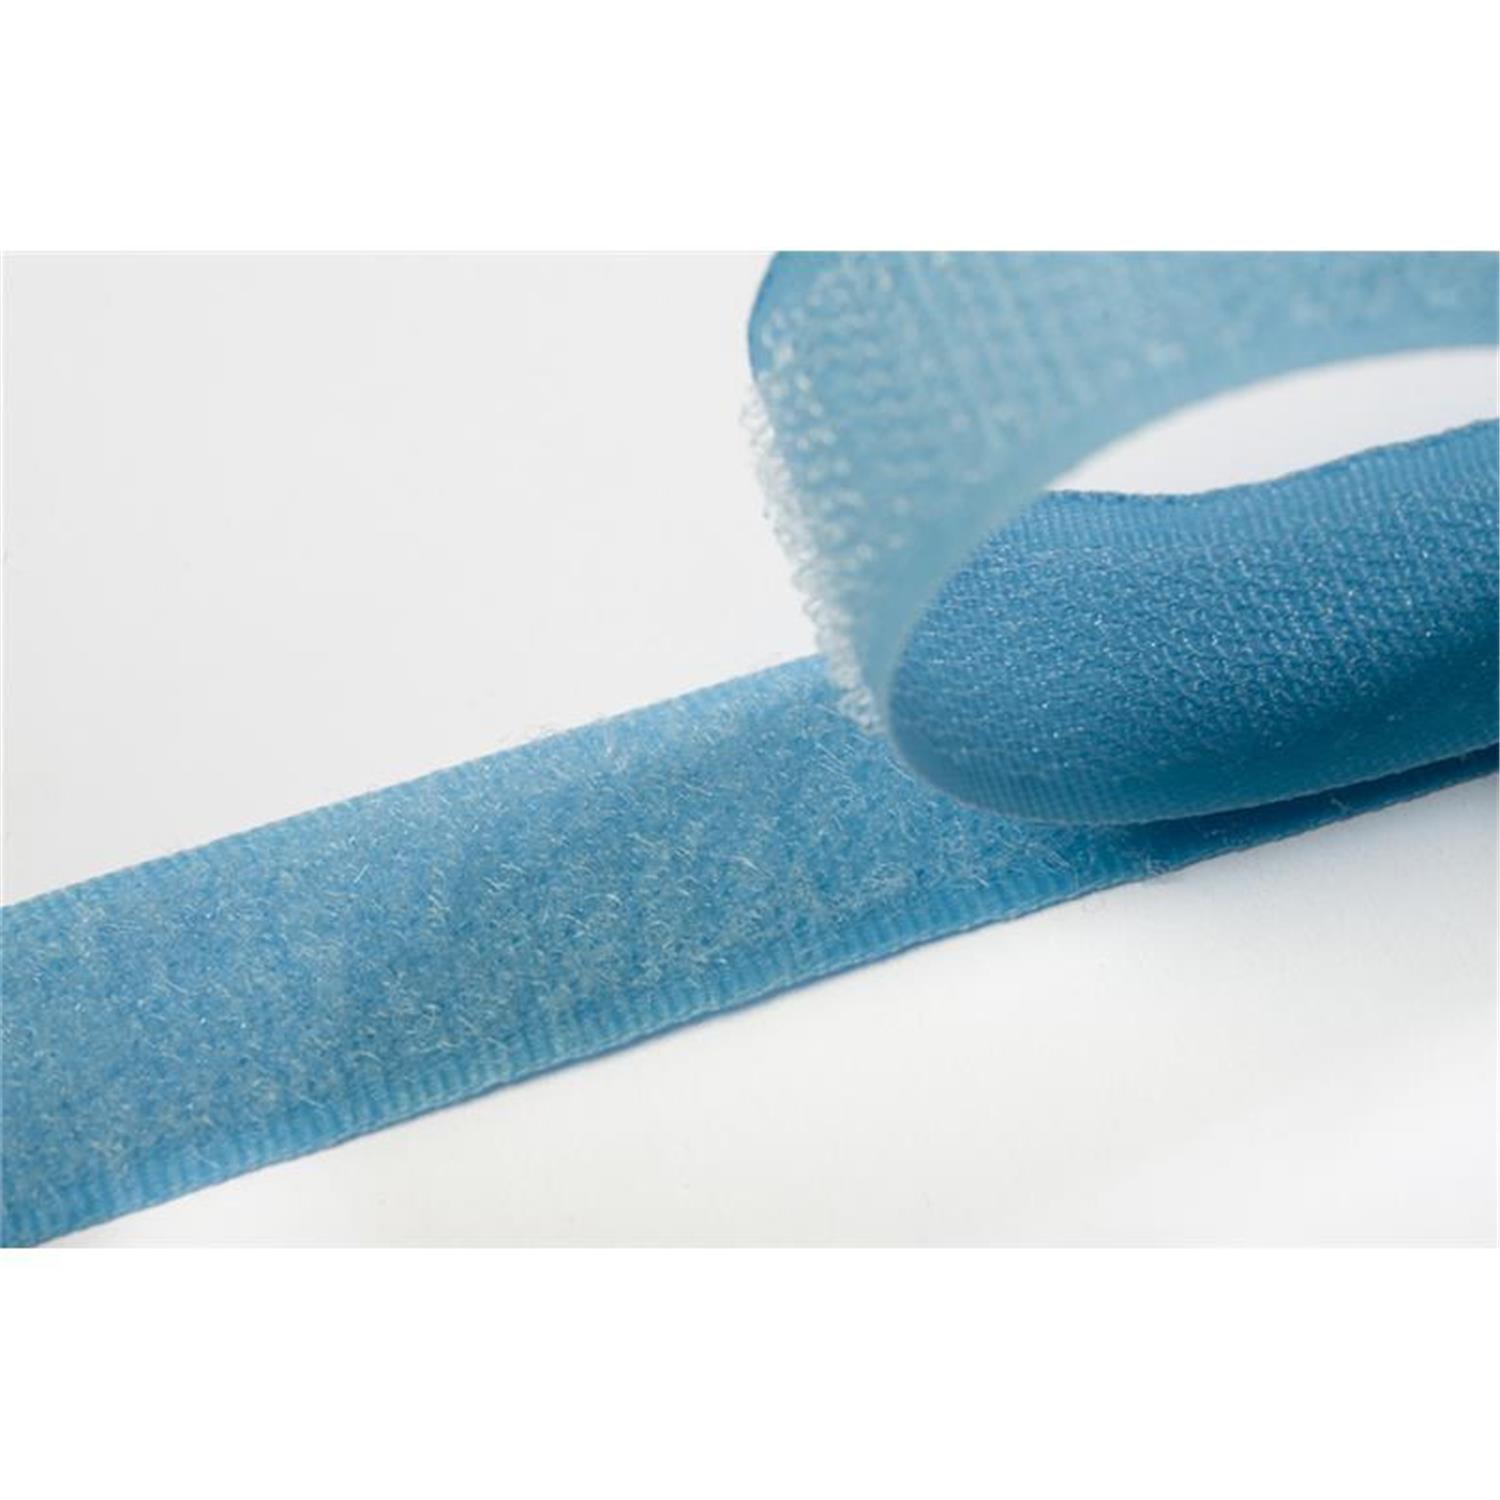 Klettband zum aufnähen, 20 mm, hellblau #19 4 Meter